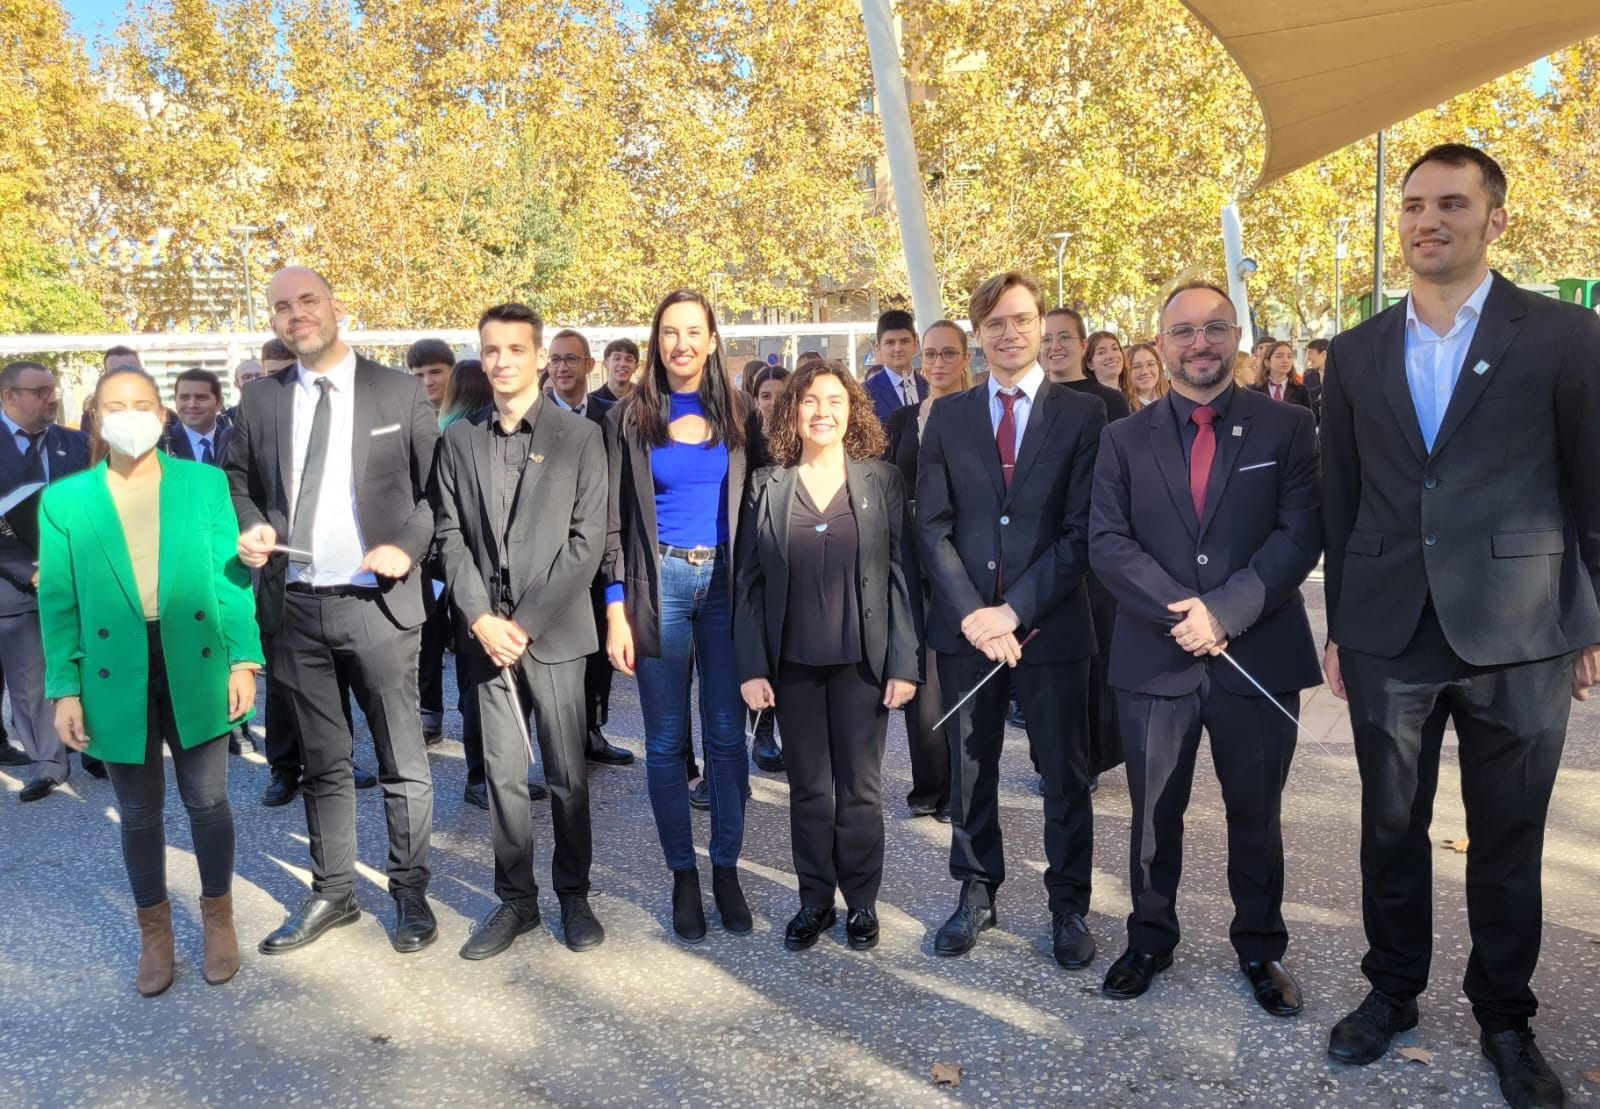 Castellón celebra Santa Cecilia con un concierto simultáneo de 150 músicos en el Grao